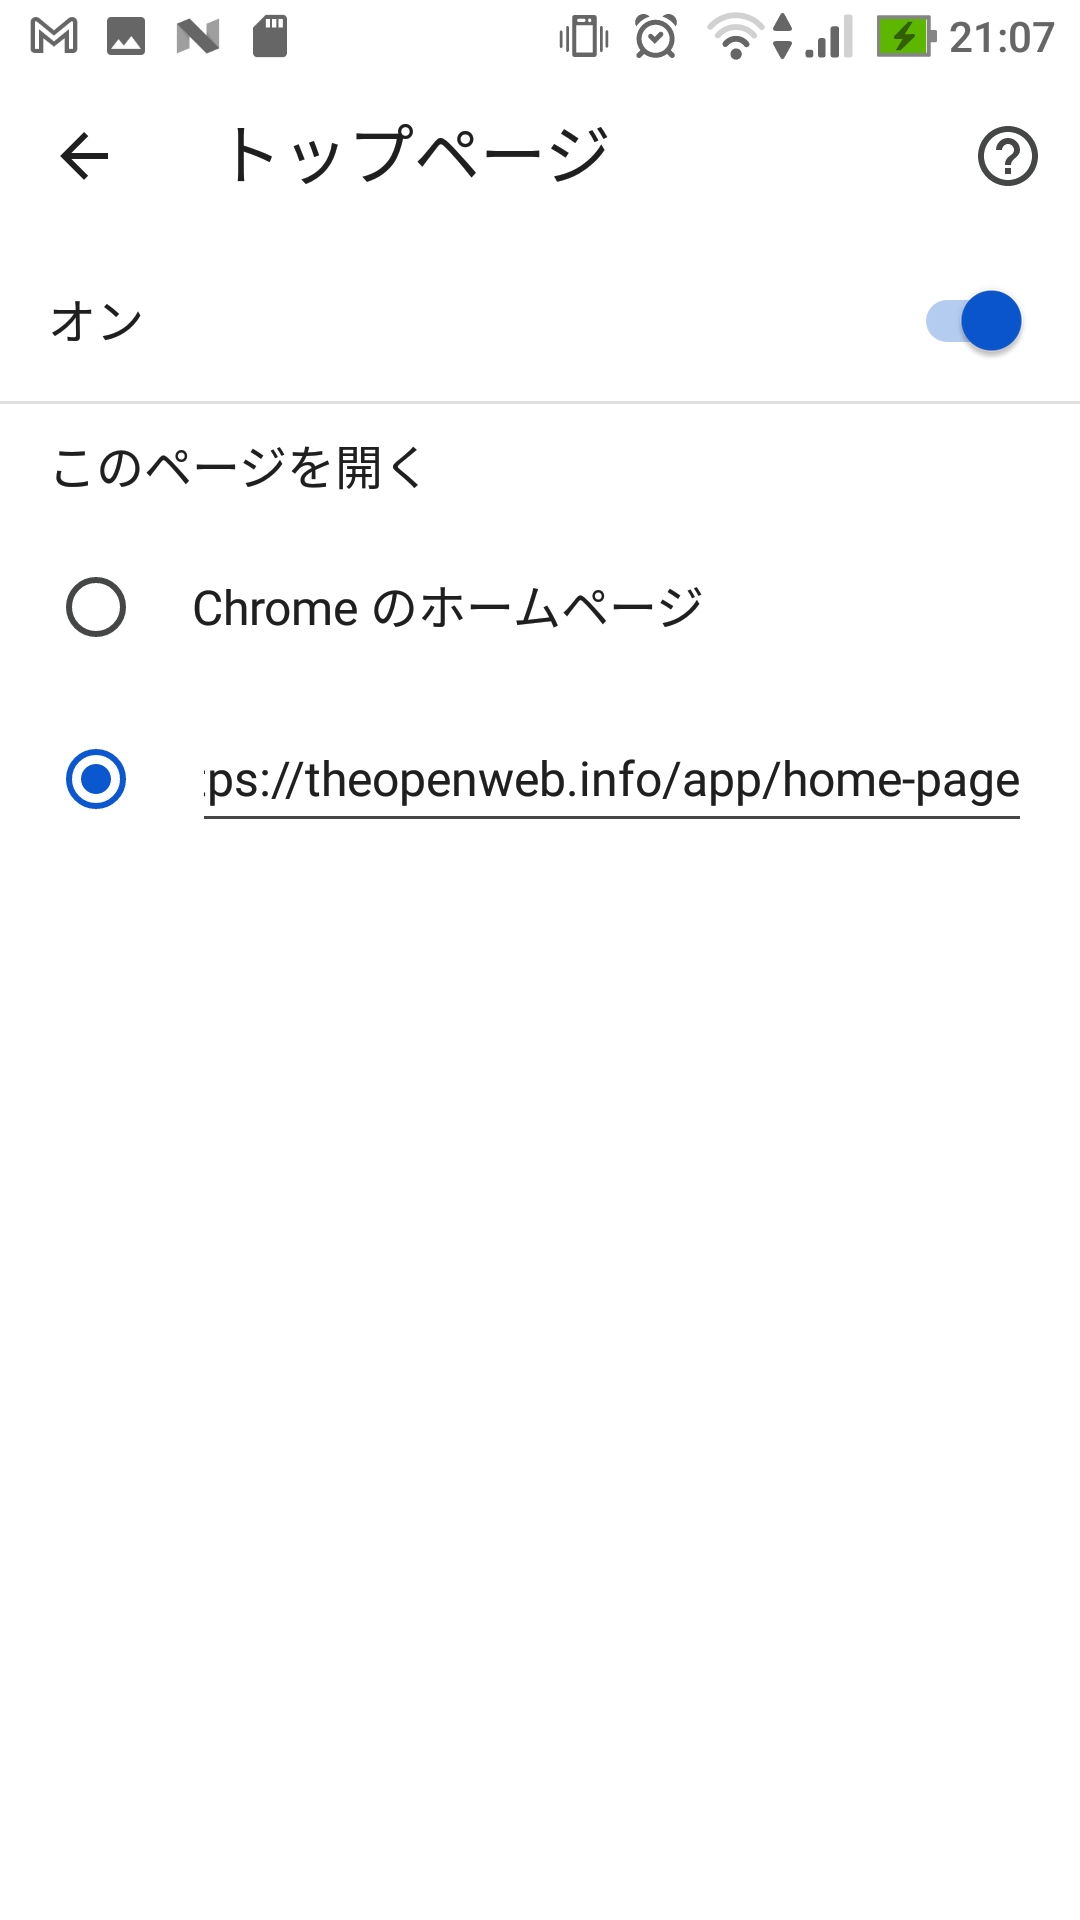 Chrome Android トップページ・ホームページ設定